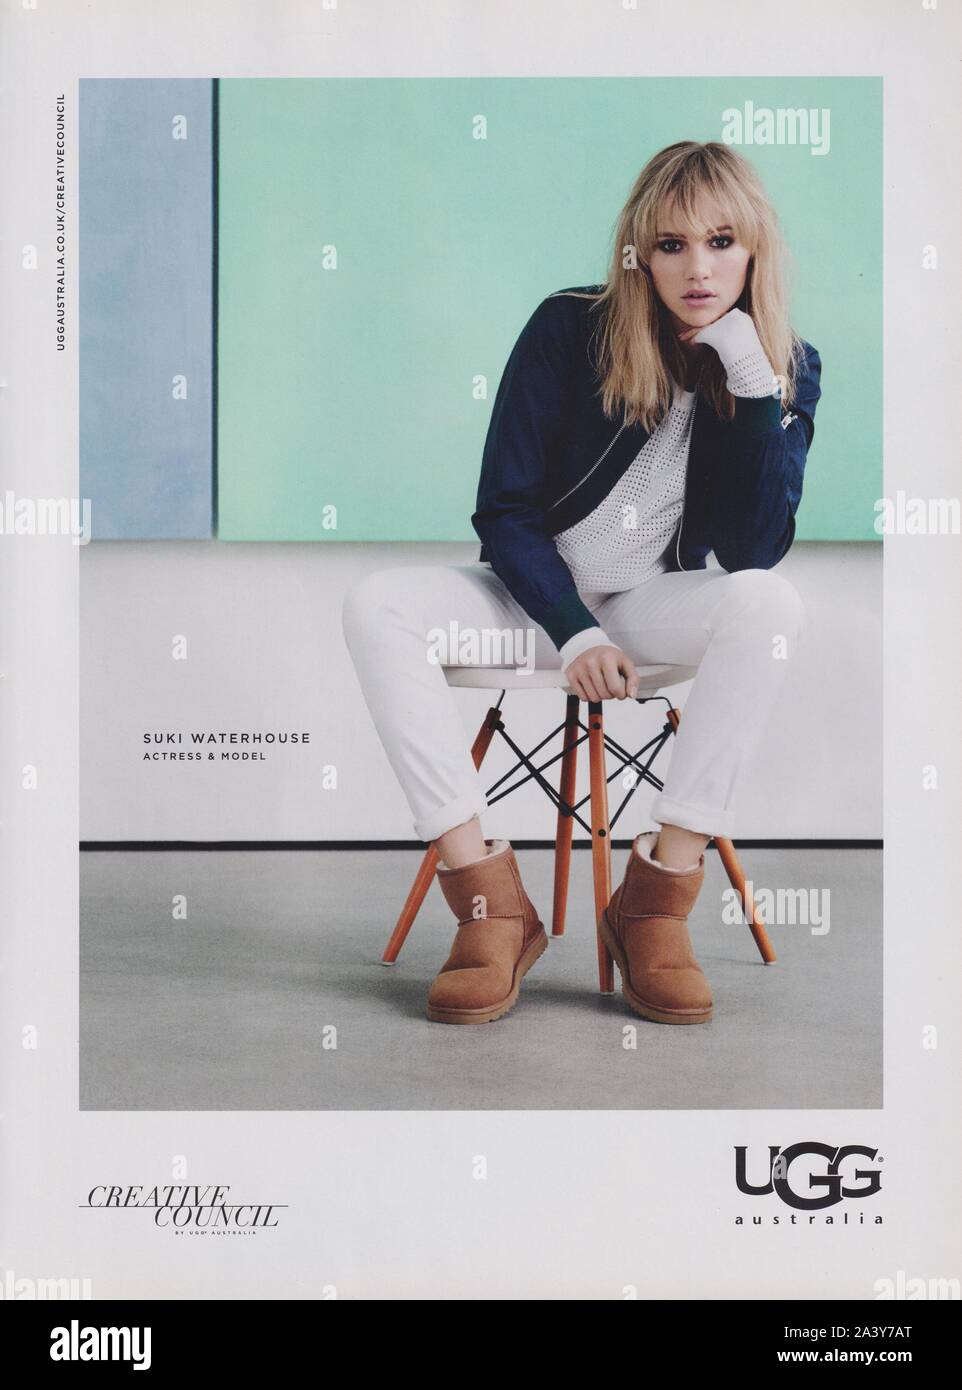 Affiche publicitaire de l'Australie d'UGG fashion house avec Suki Waterhouse dans la version papier du magazine à partir de 2014, la publicité, la création de l'Australie d'UGG 2010s'annonce Banque D'Images